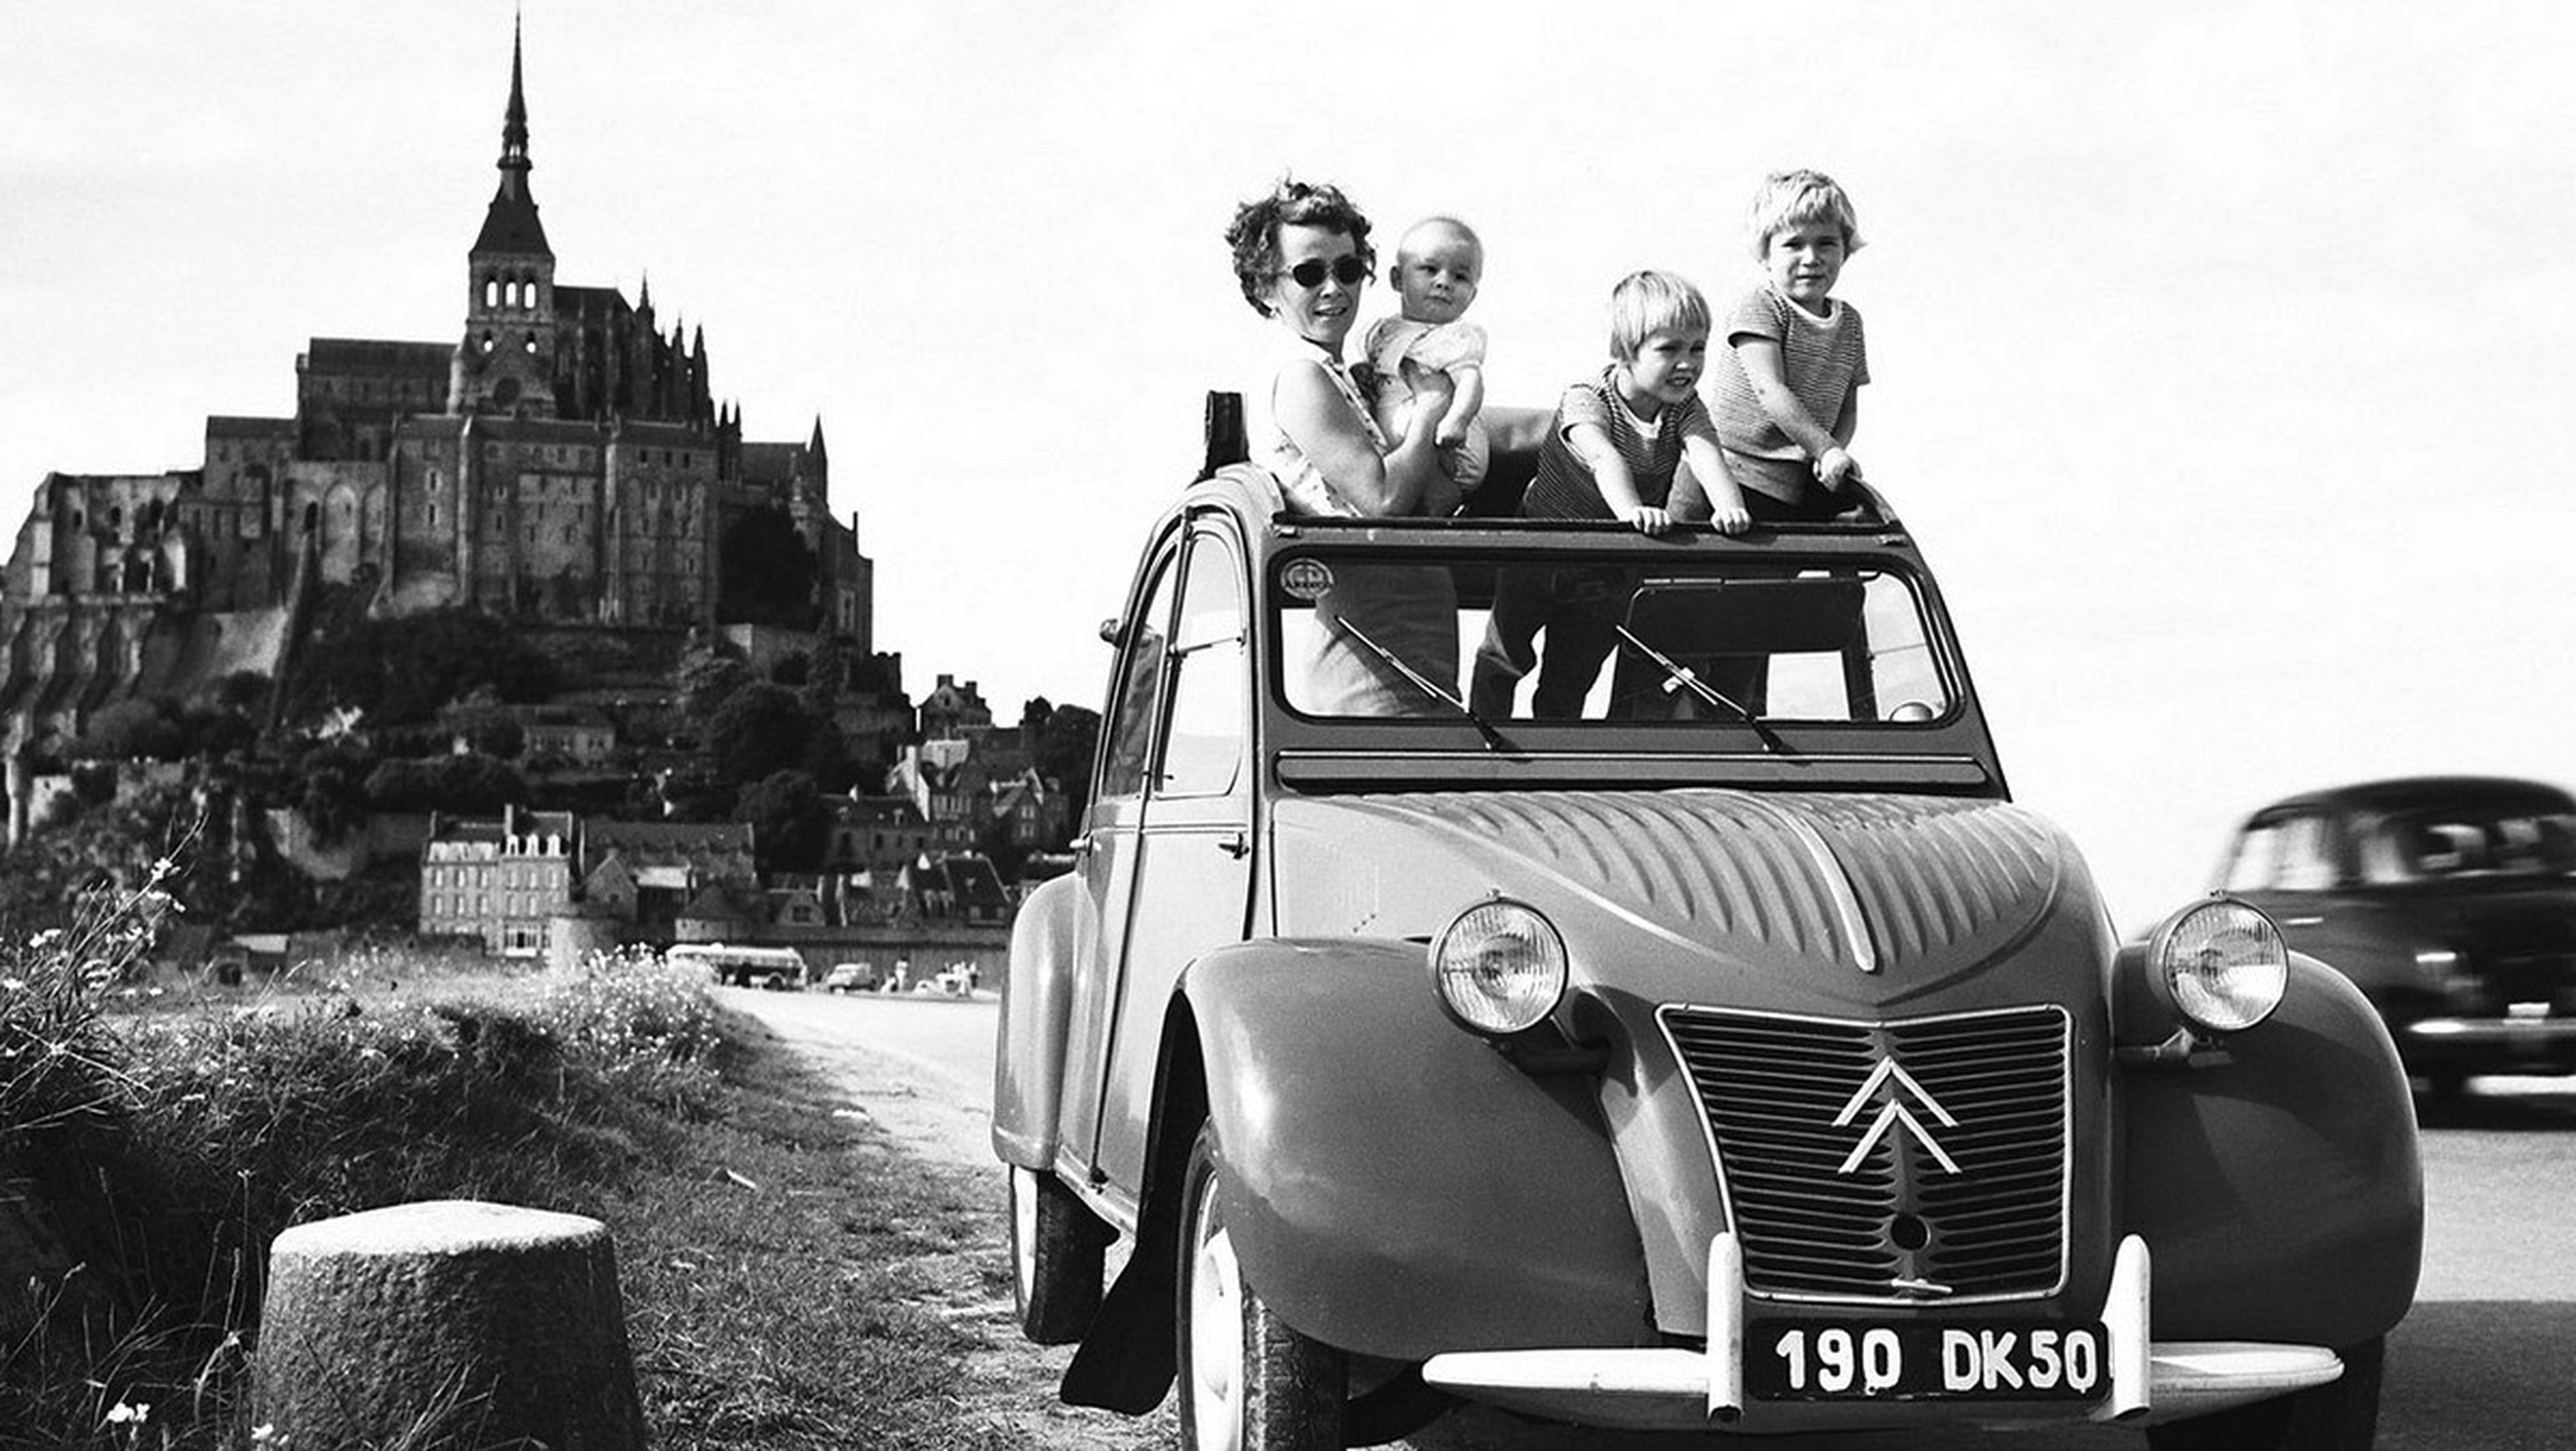 La historia del Citroën 2CV - En 1948 se presenta el modelo definitivo